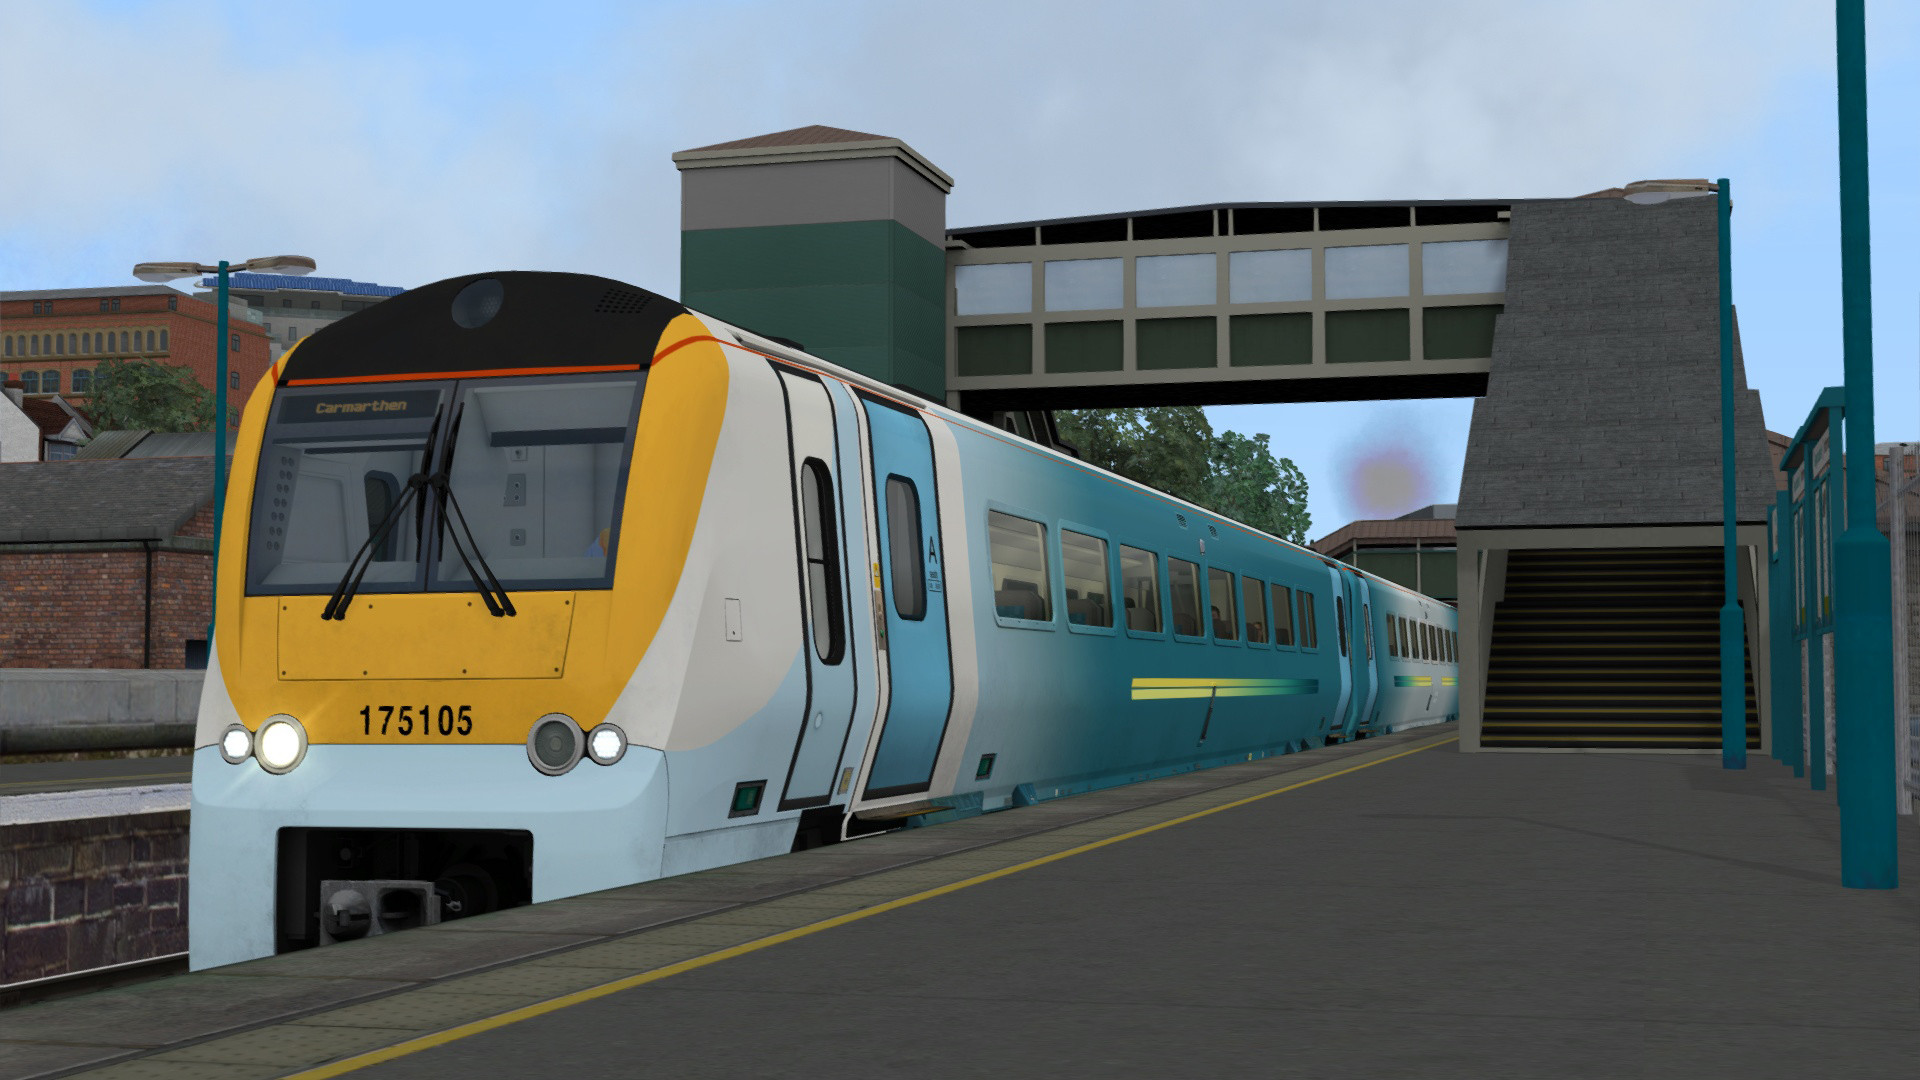 Train Simulator - South Wales Coastal: Bristol - Swansea Route Add-on DLC Steam CD Key [USD 4.17]